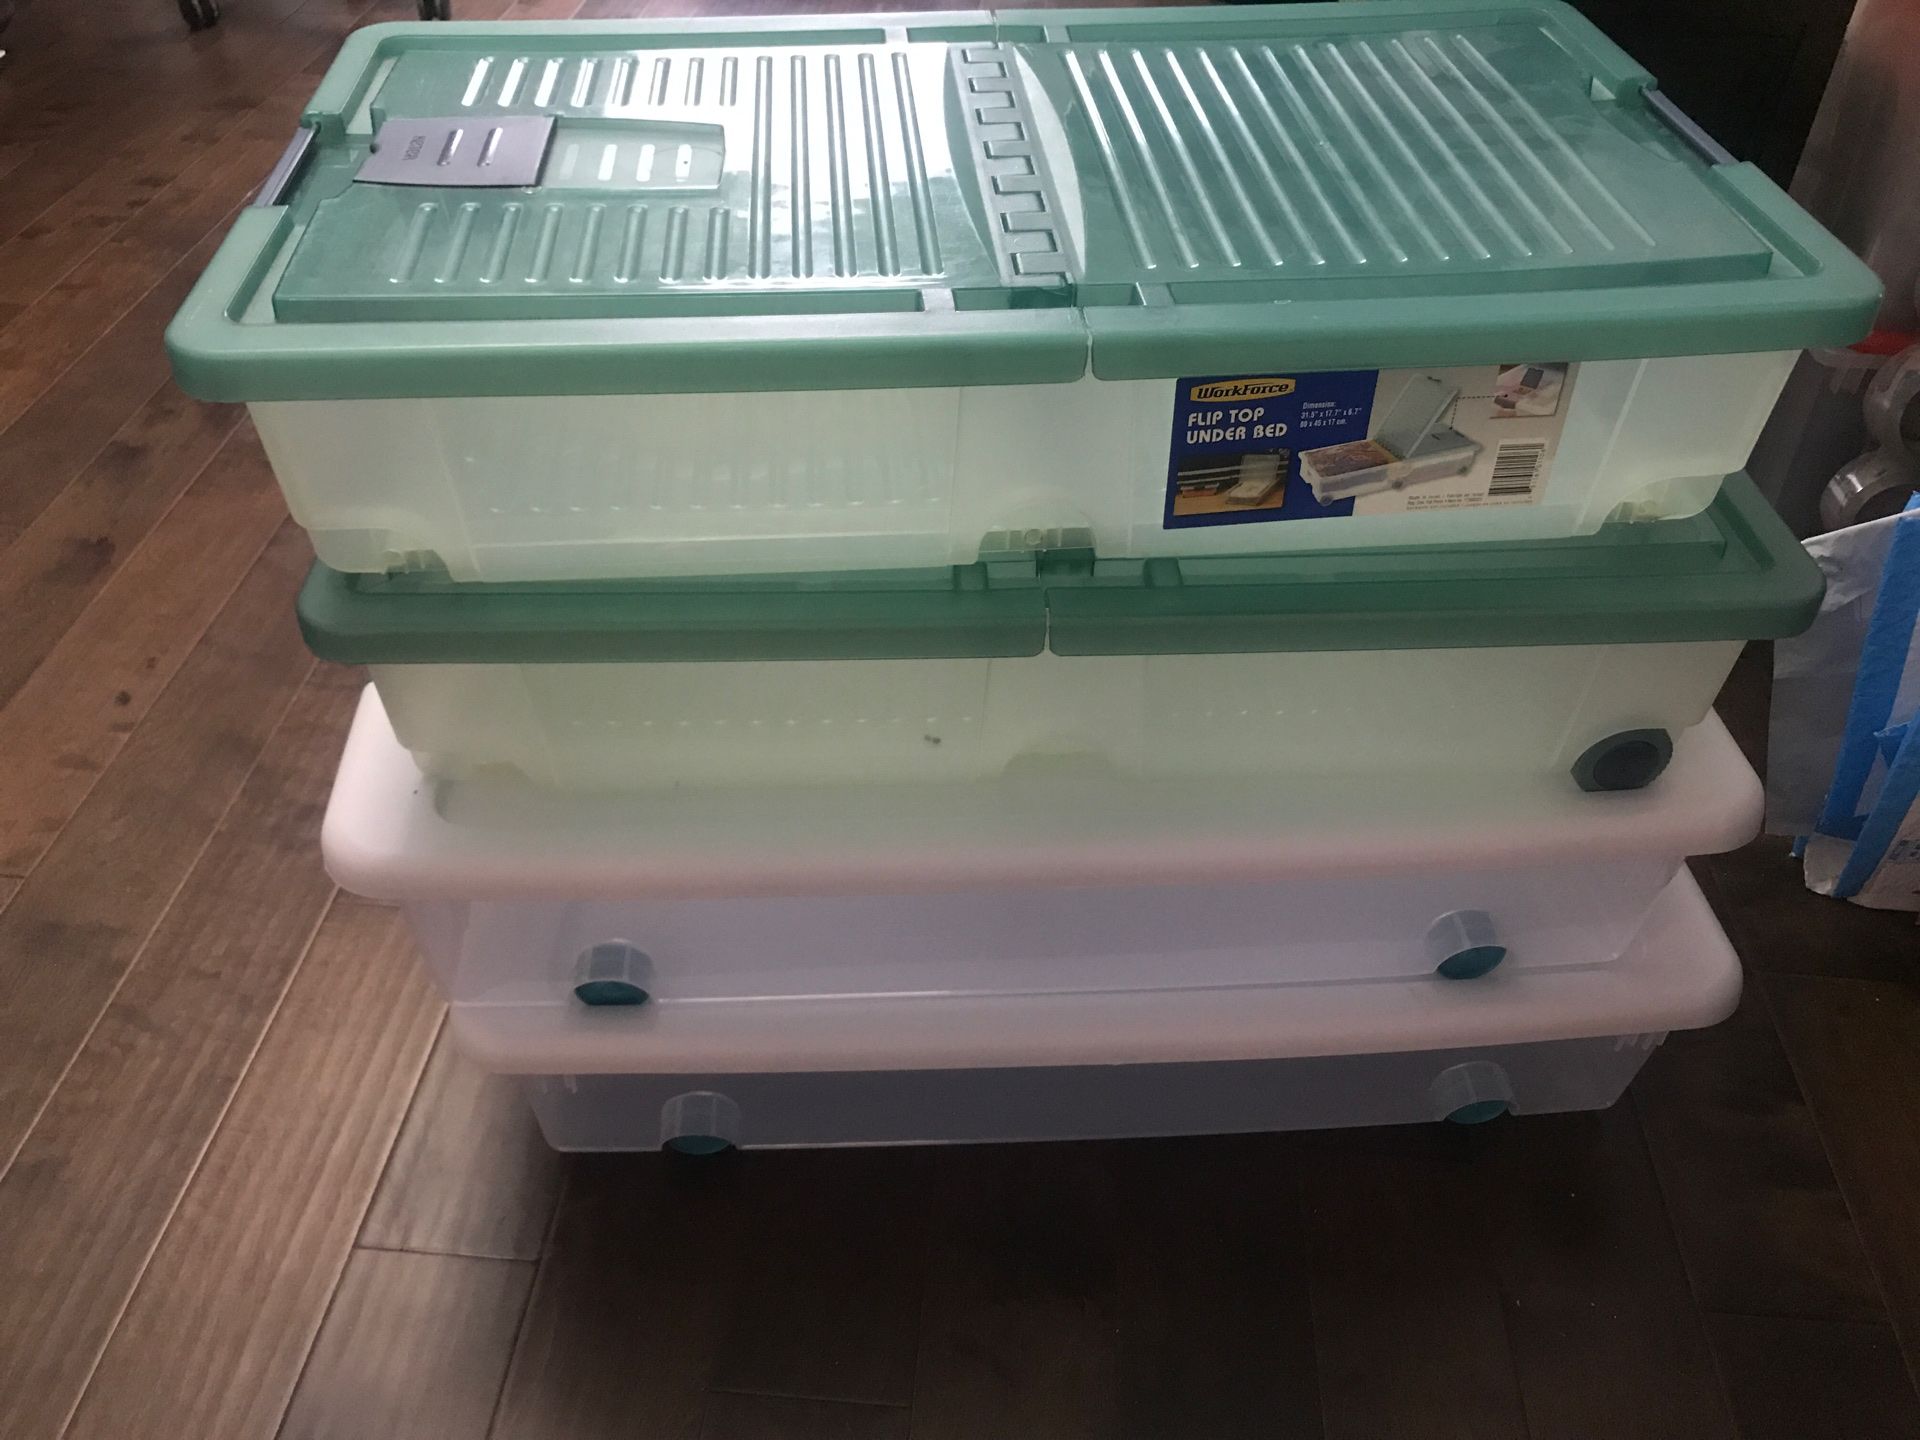 Under bed storage plastic bins - 3 bins